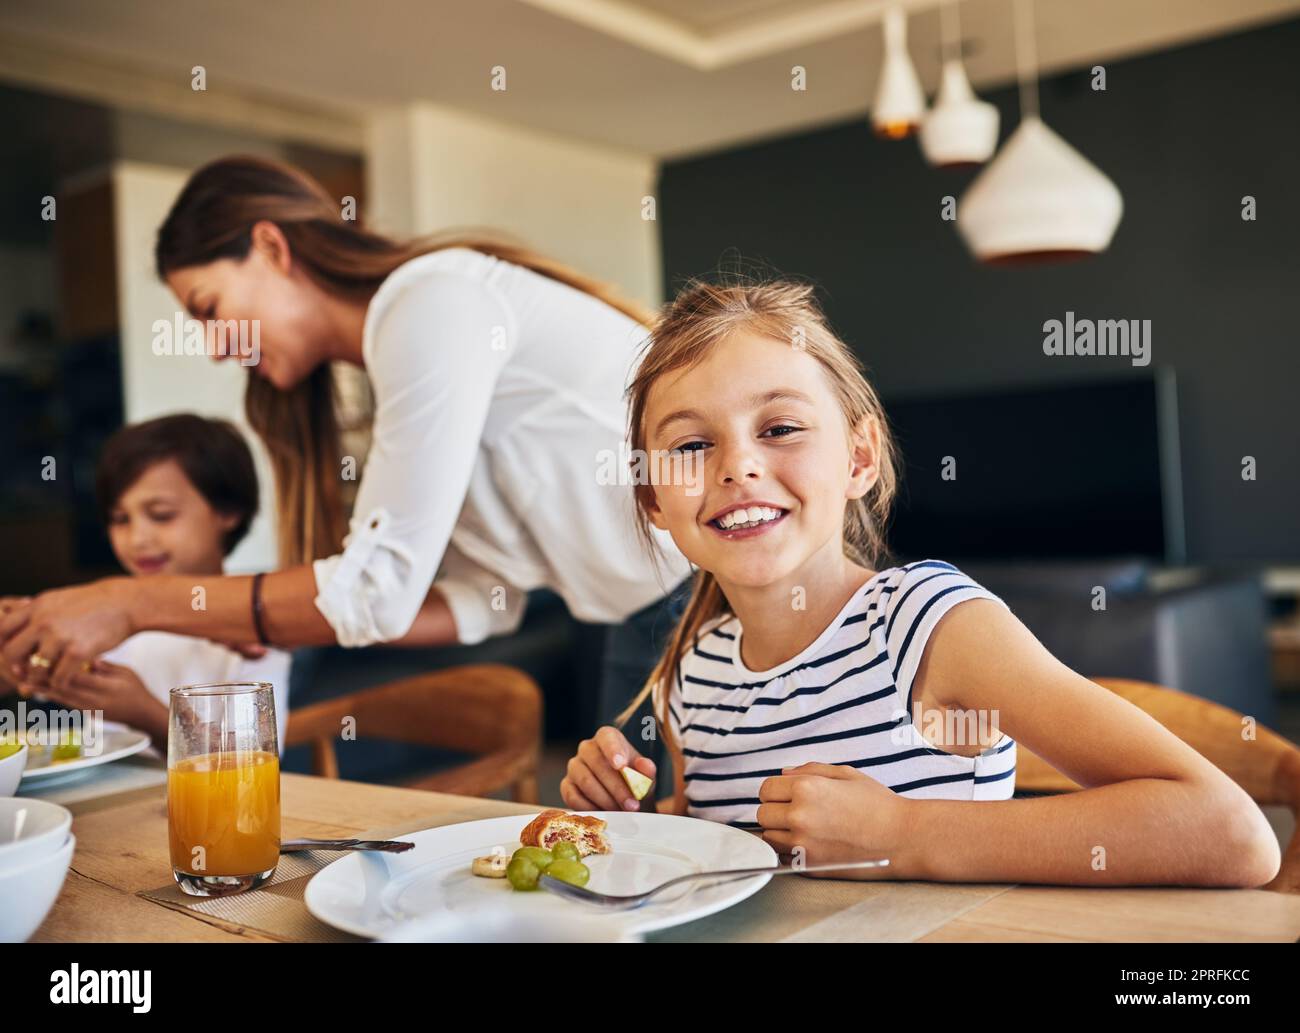 La colazione è la migliore con la mia famiglia. Ritratto di una bambina che ha fatto colazione con la sua famiglia sullo sfondo. Foto Stock